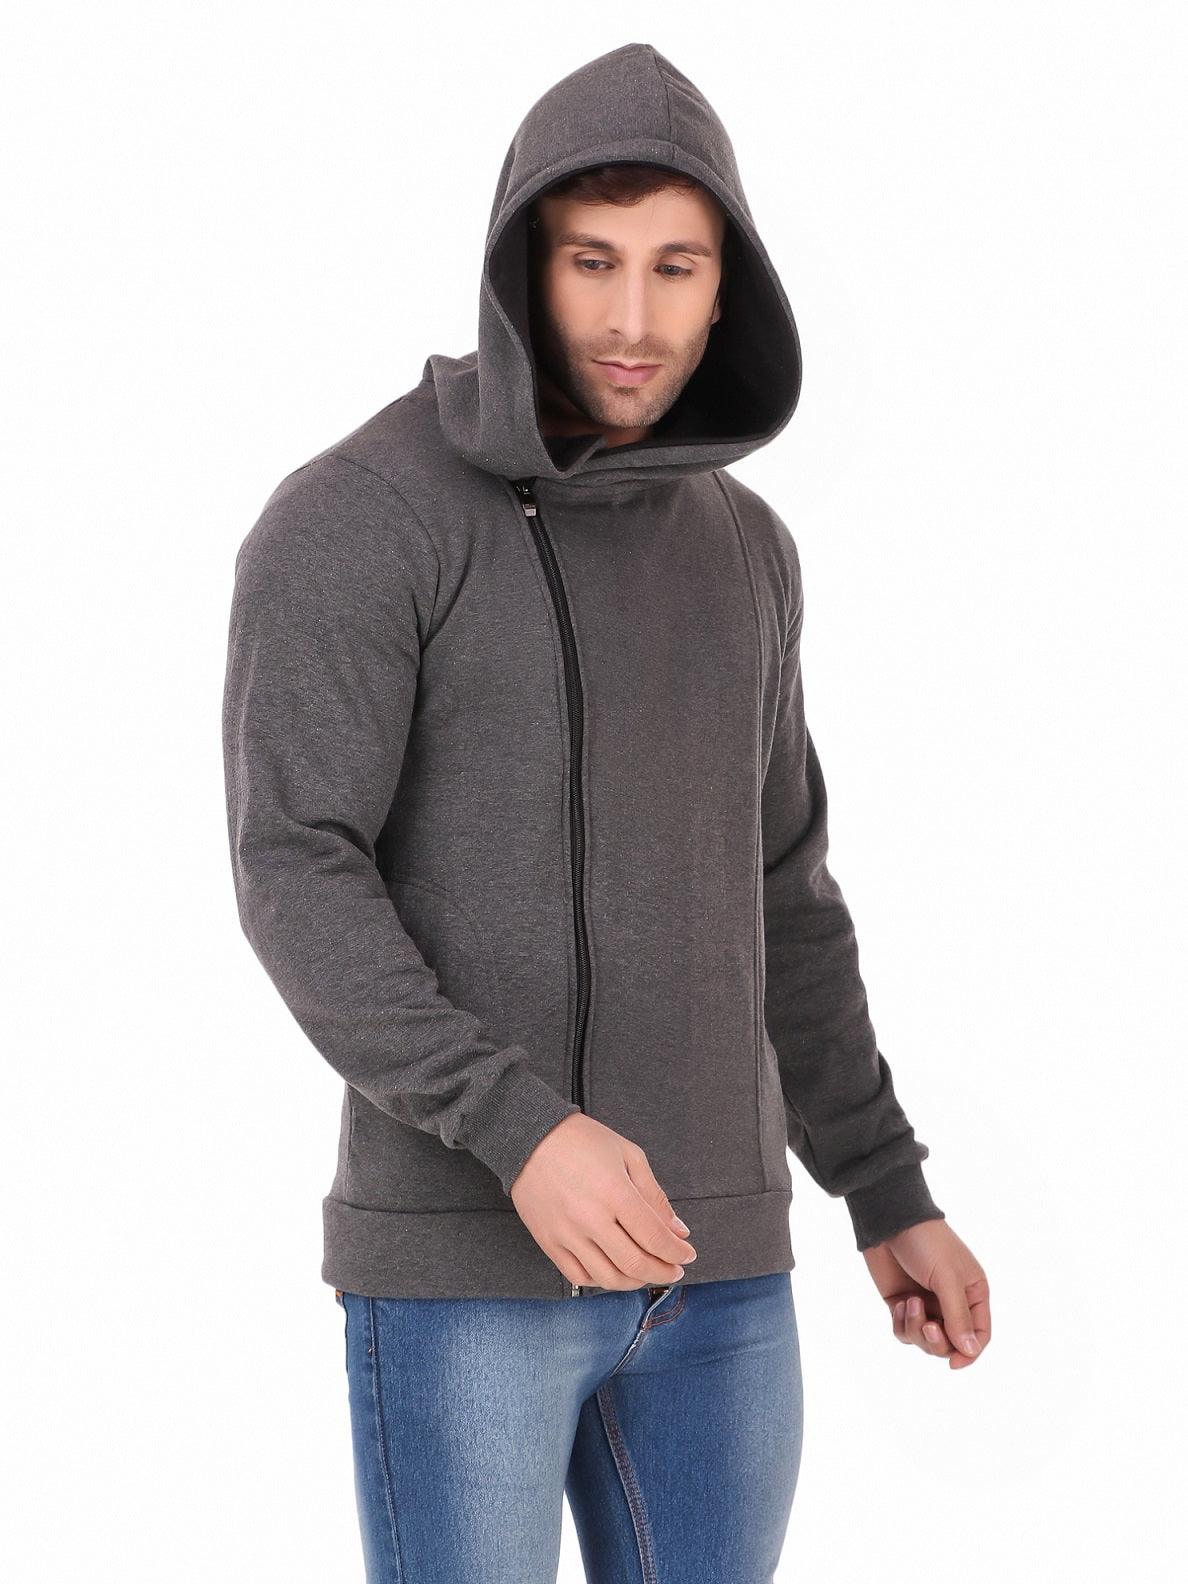 Men's Cotton Hoodie Jacket Sweatshirt